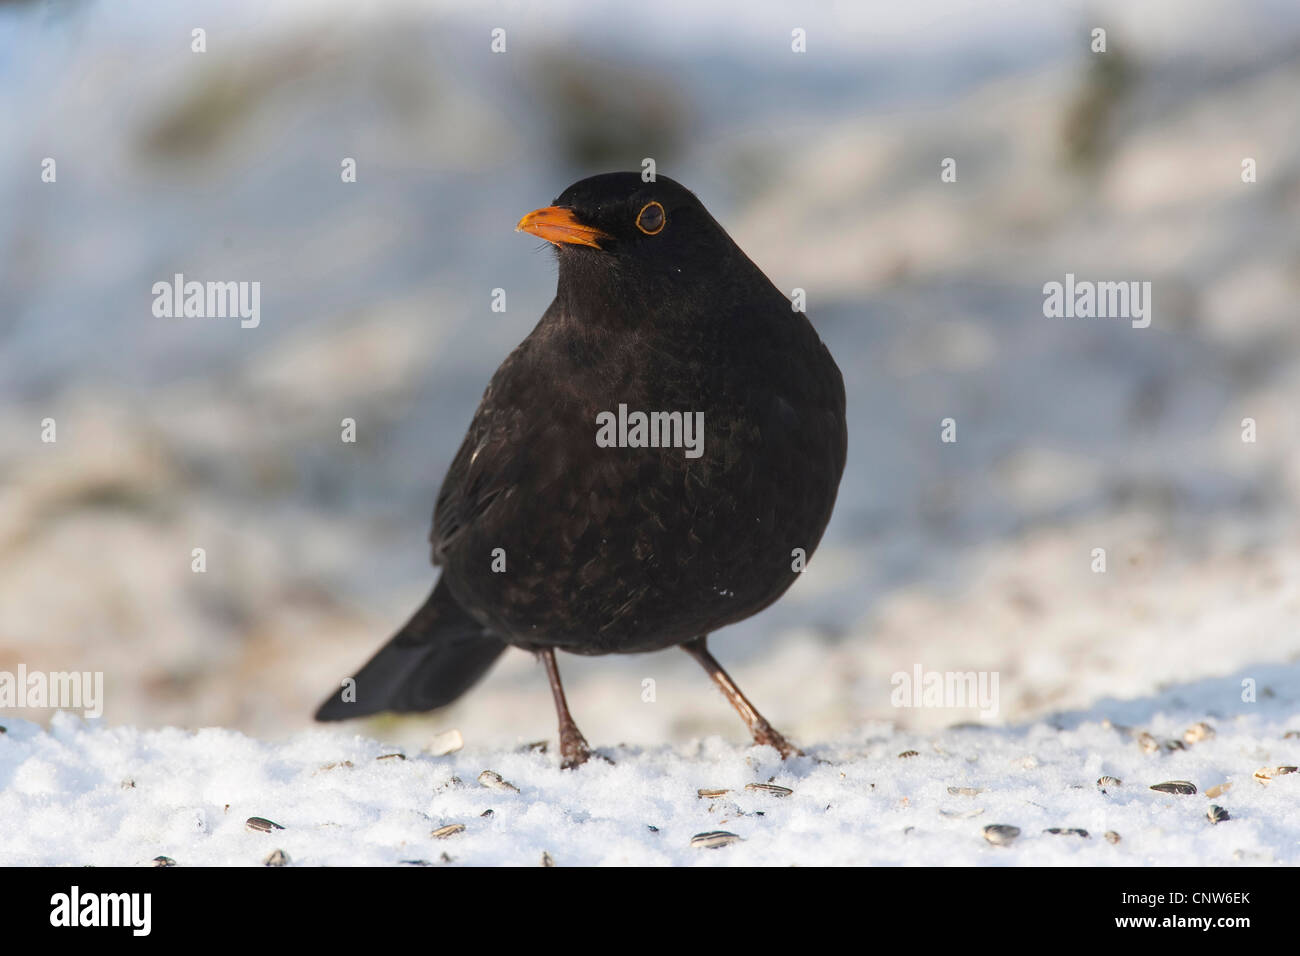 Mâle à une mangeoire pour oiseaux picorant, céréales de la neige, Allemagne Banque D'Images